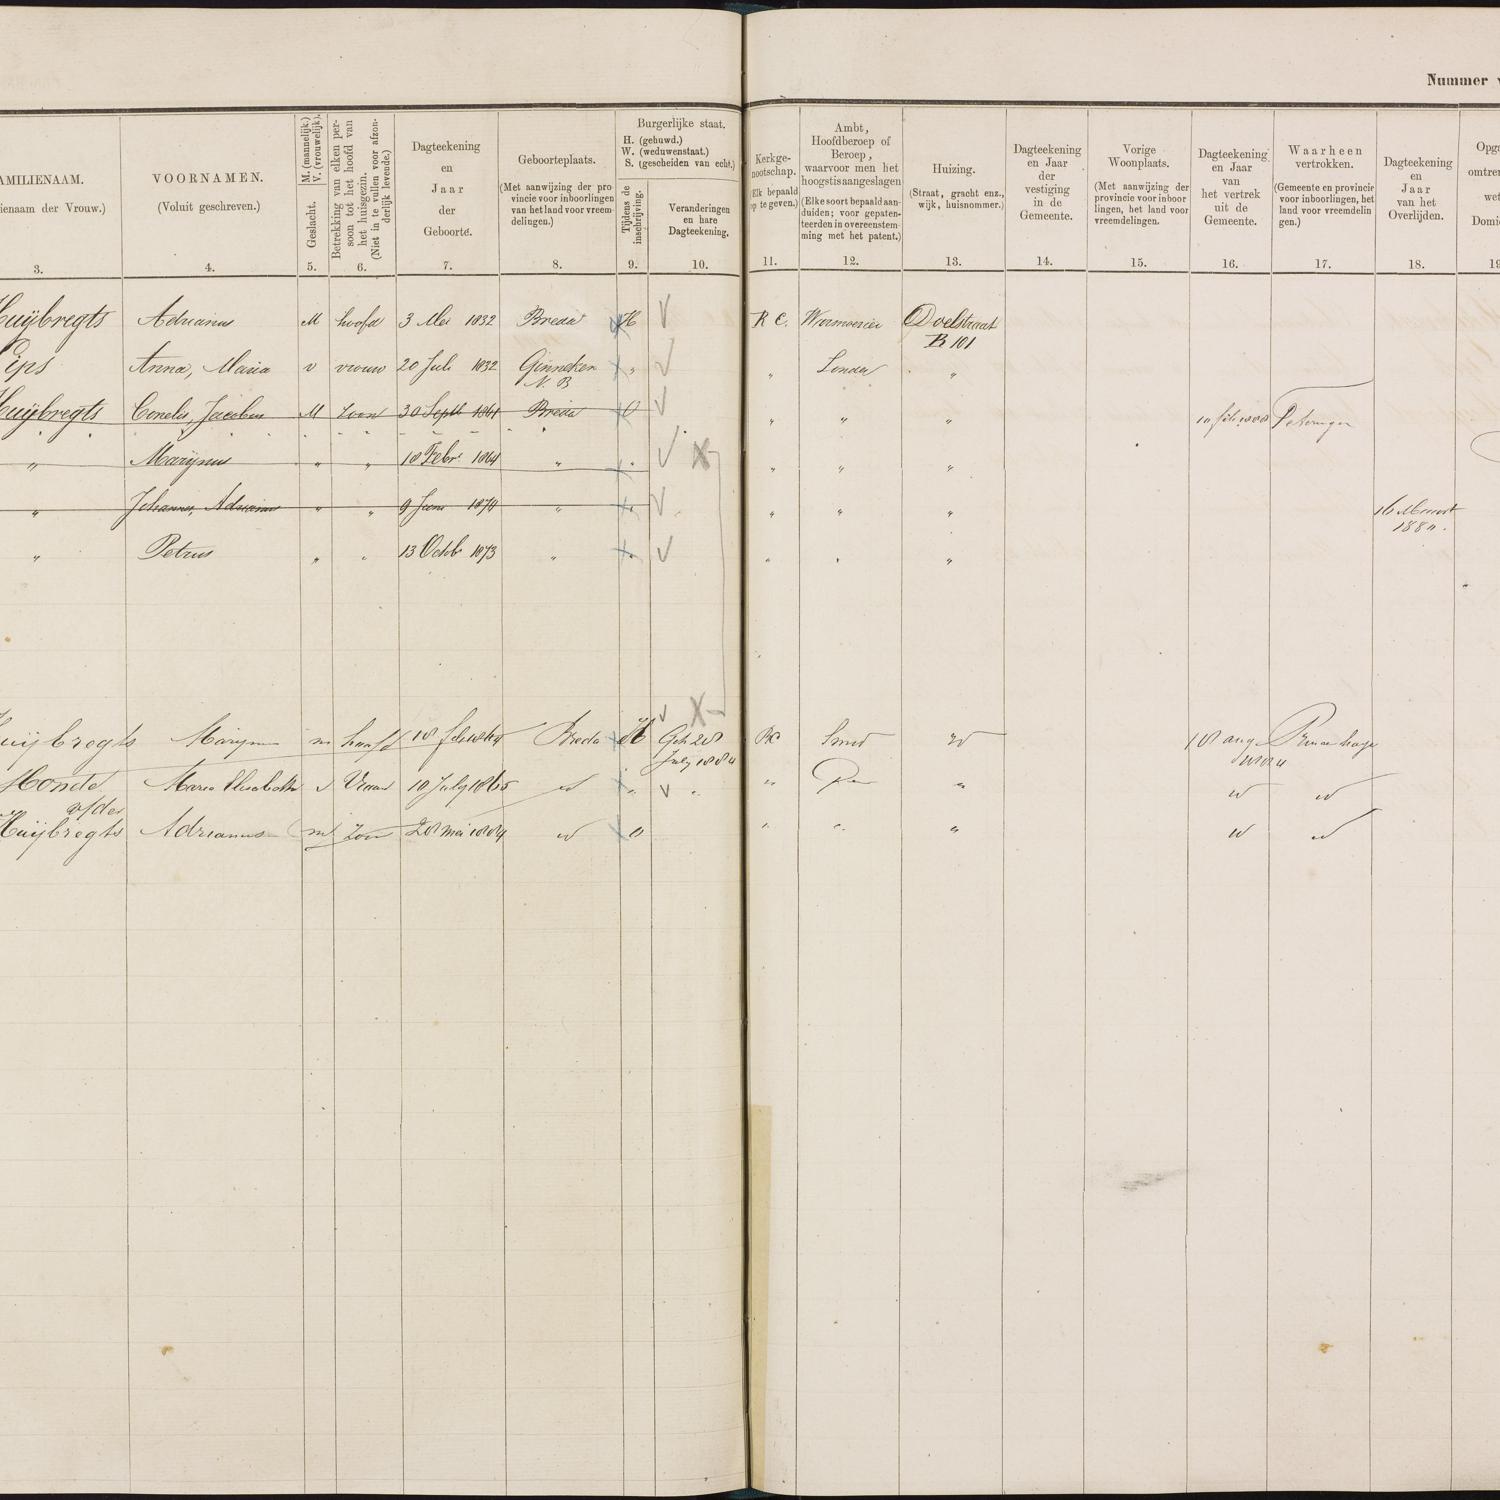 Population registry, Breda, 1880-1889, part 7, sheet 150